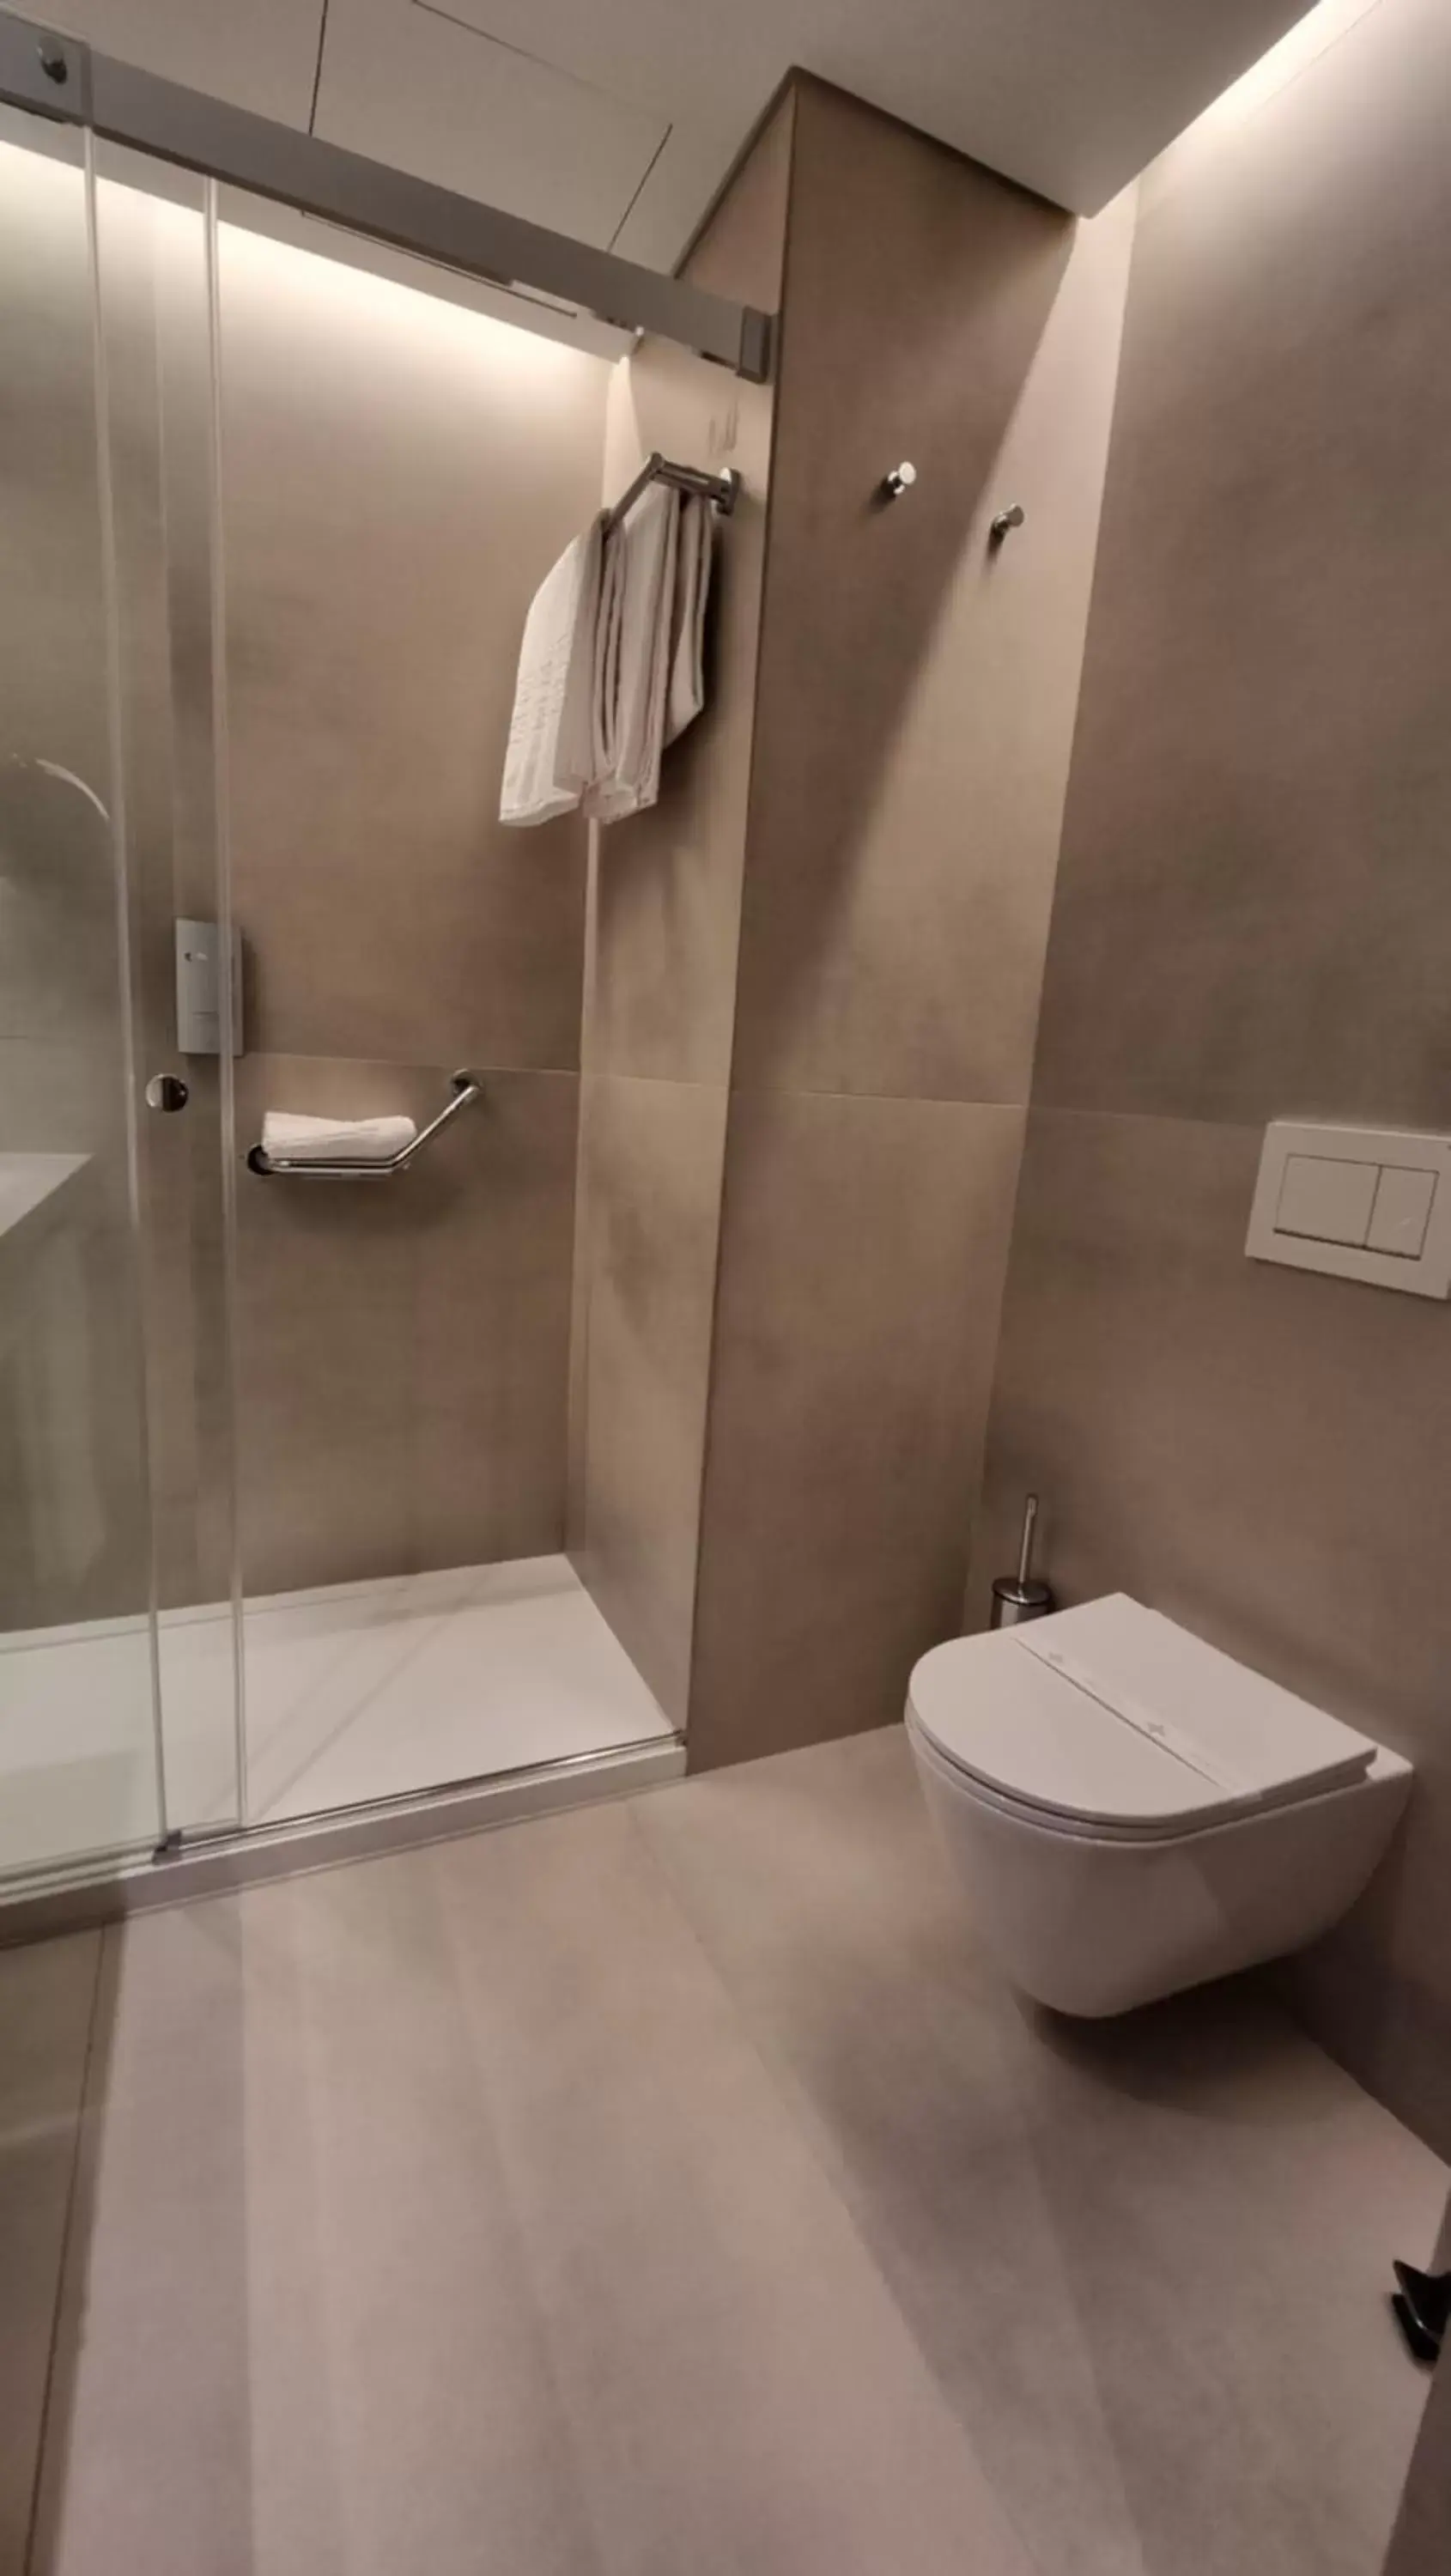 Bathroom in Hotel Principe Avila